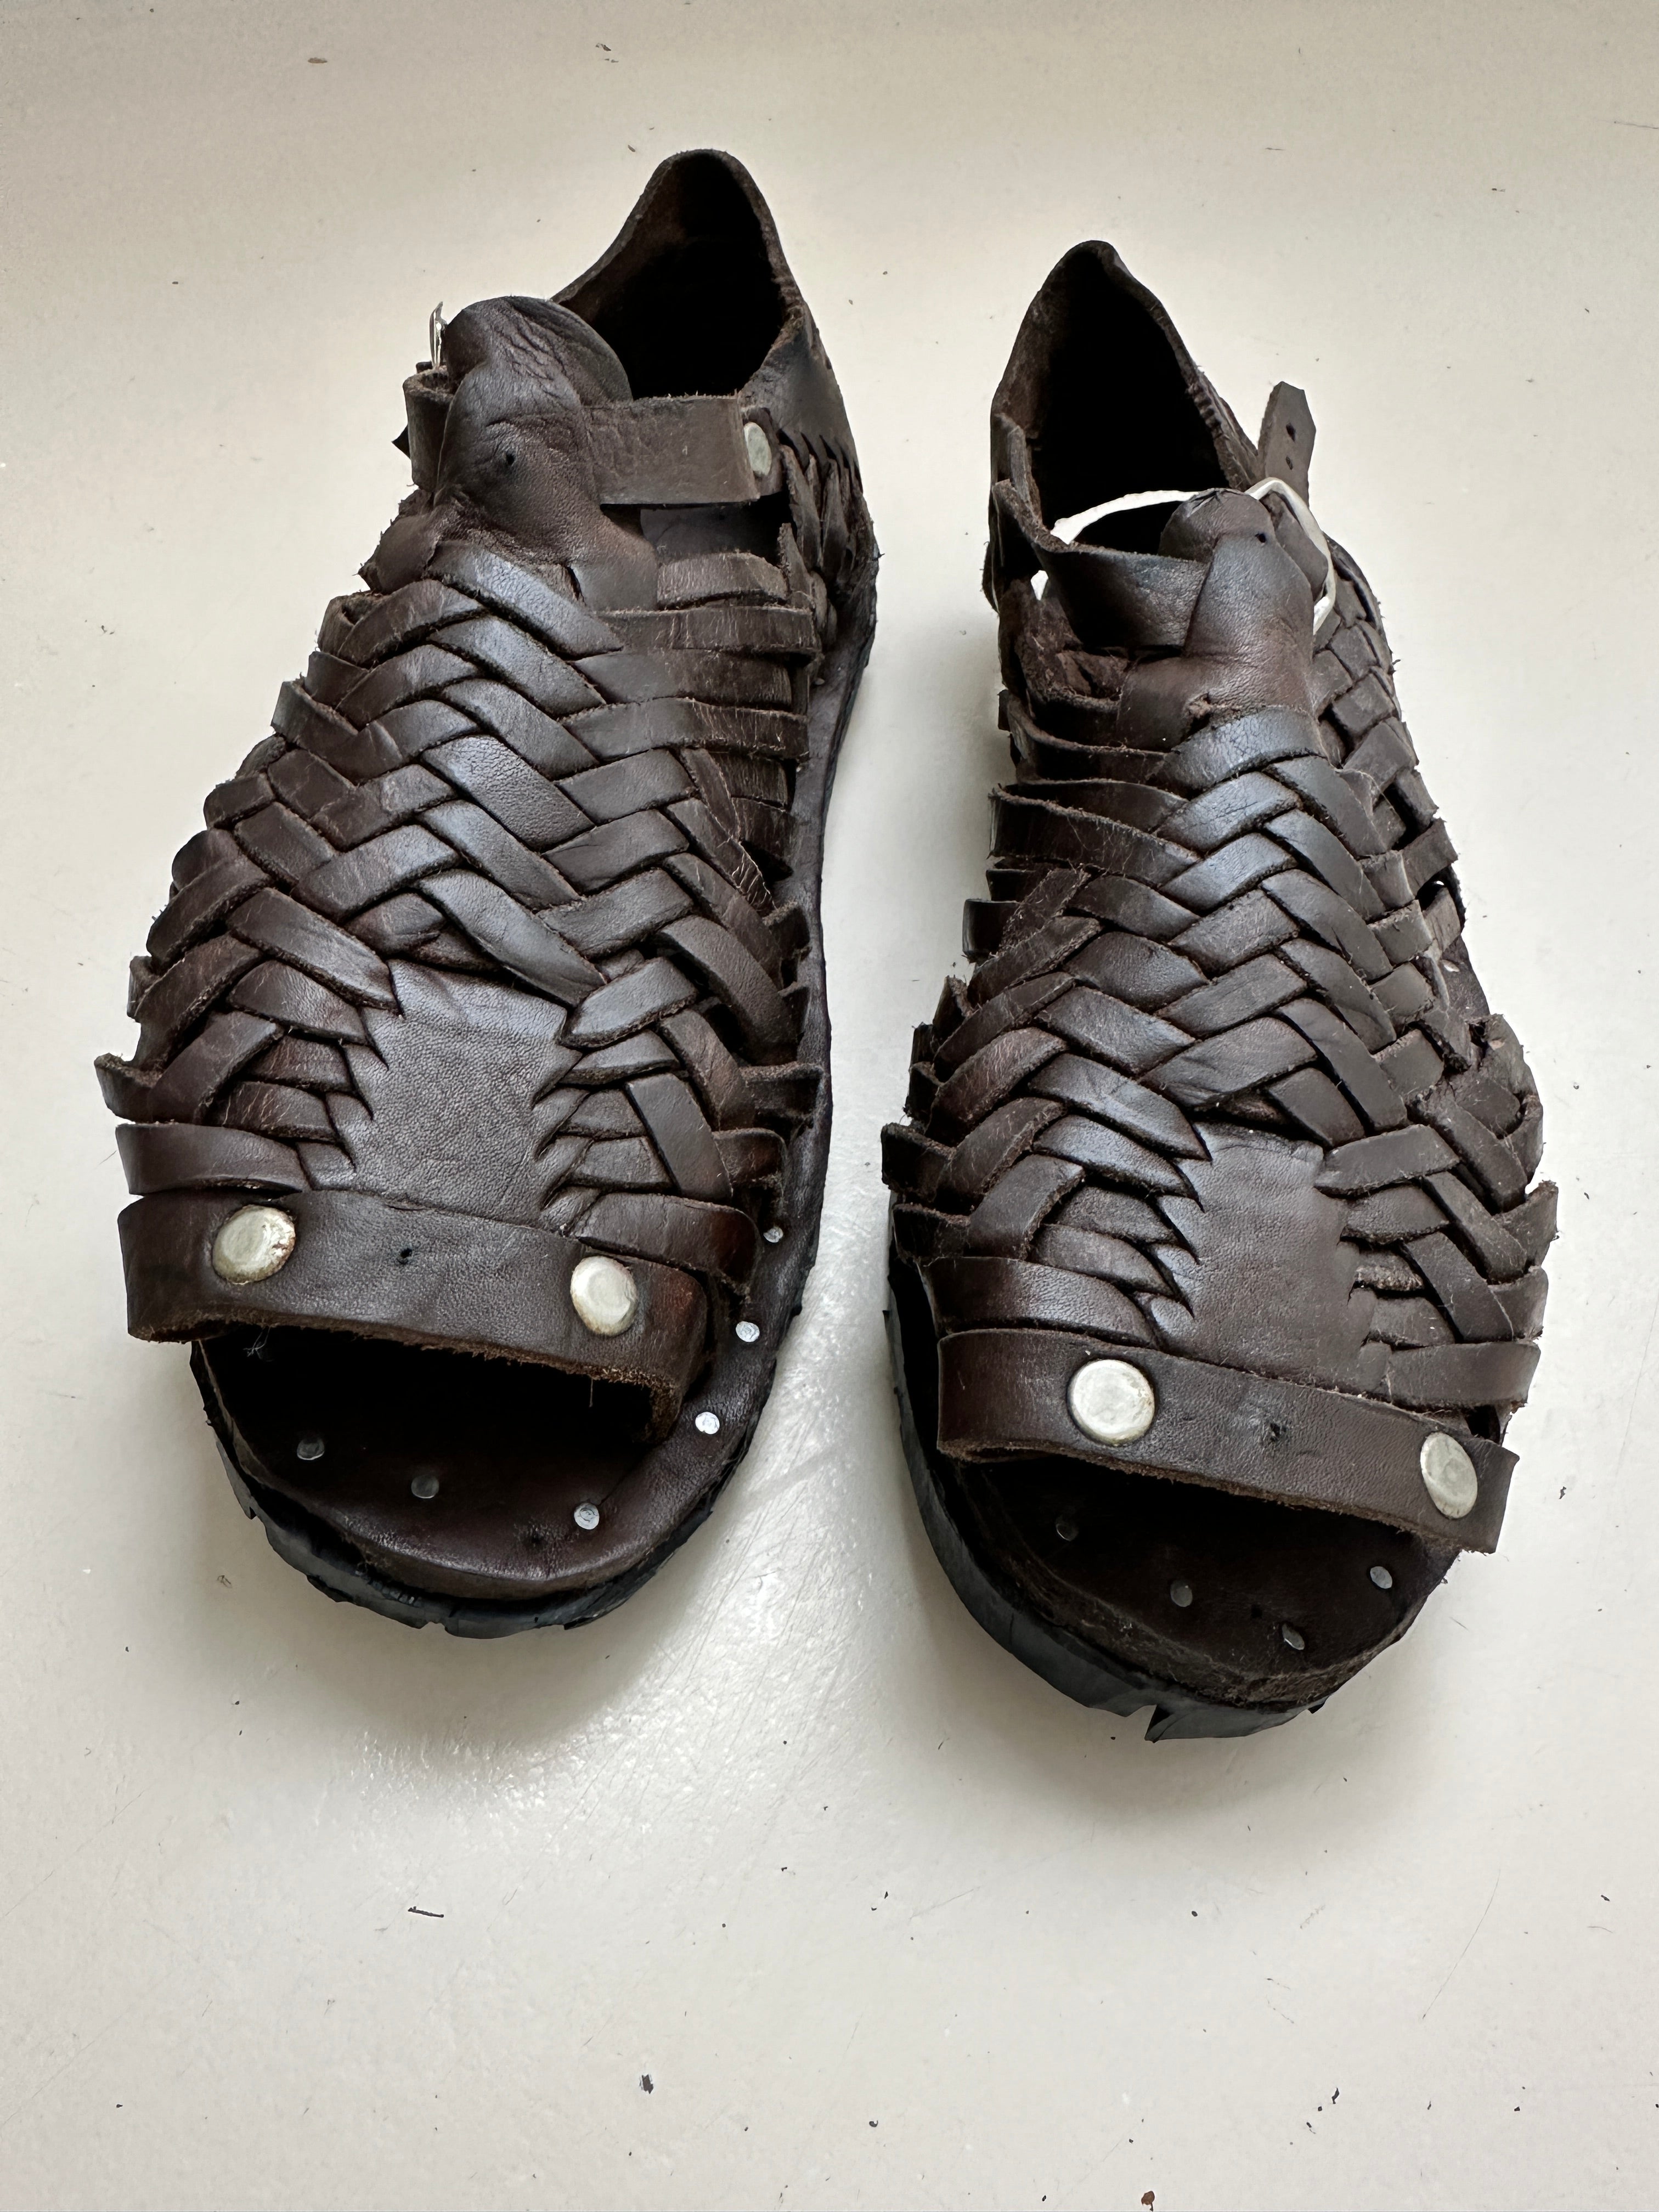 Future Nomads Shoes Huarache Sandals